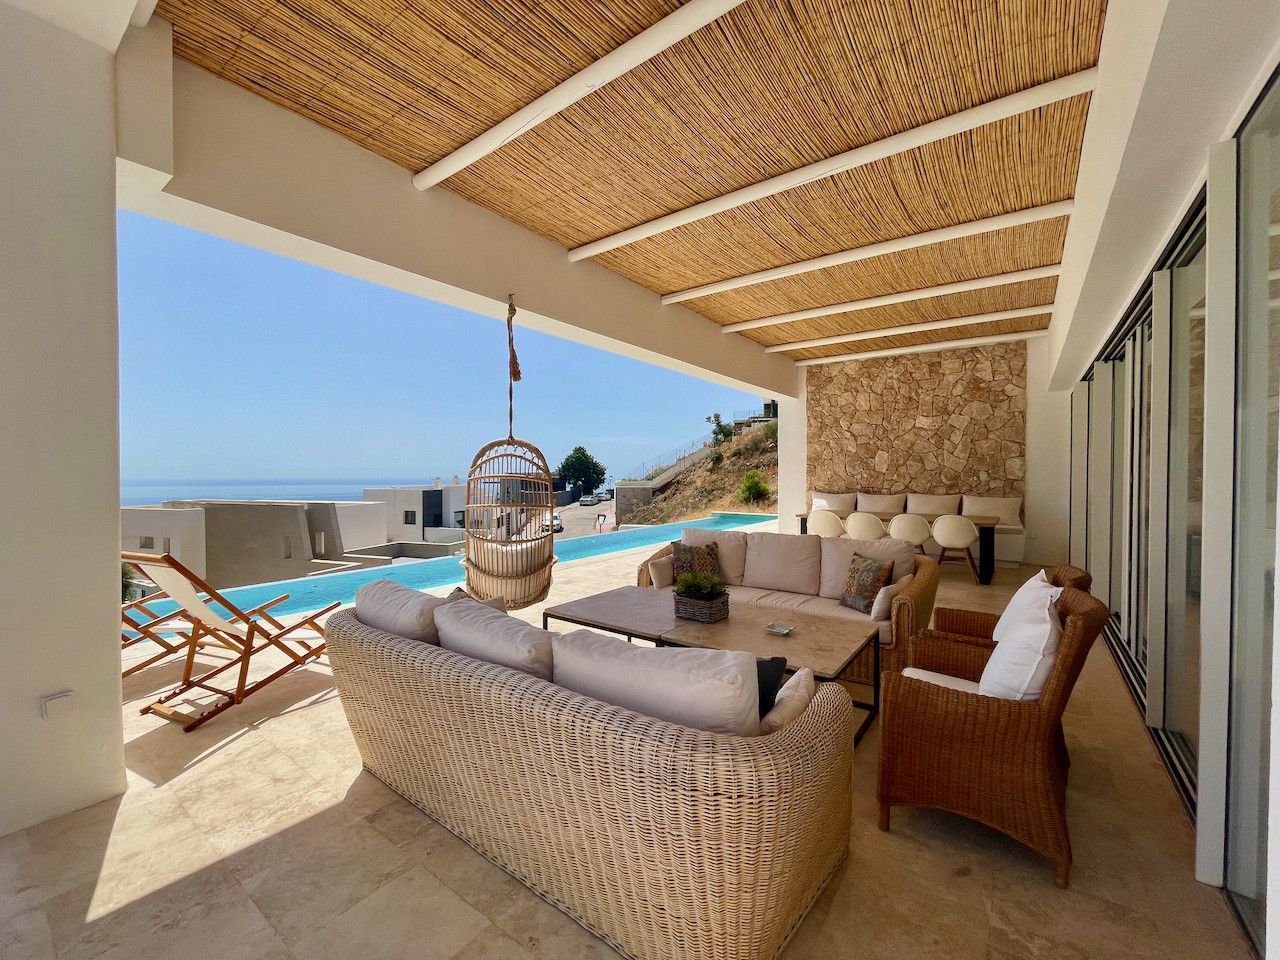 Beautiful luxury villa with panoramic sea views in Buenavista, Mijas!